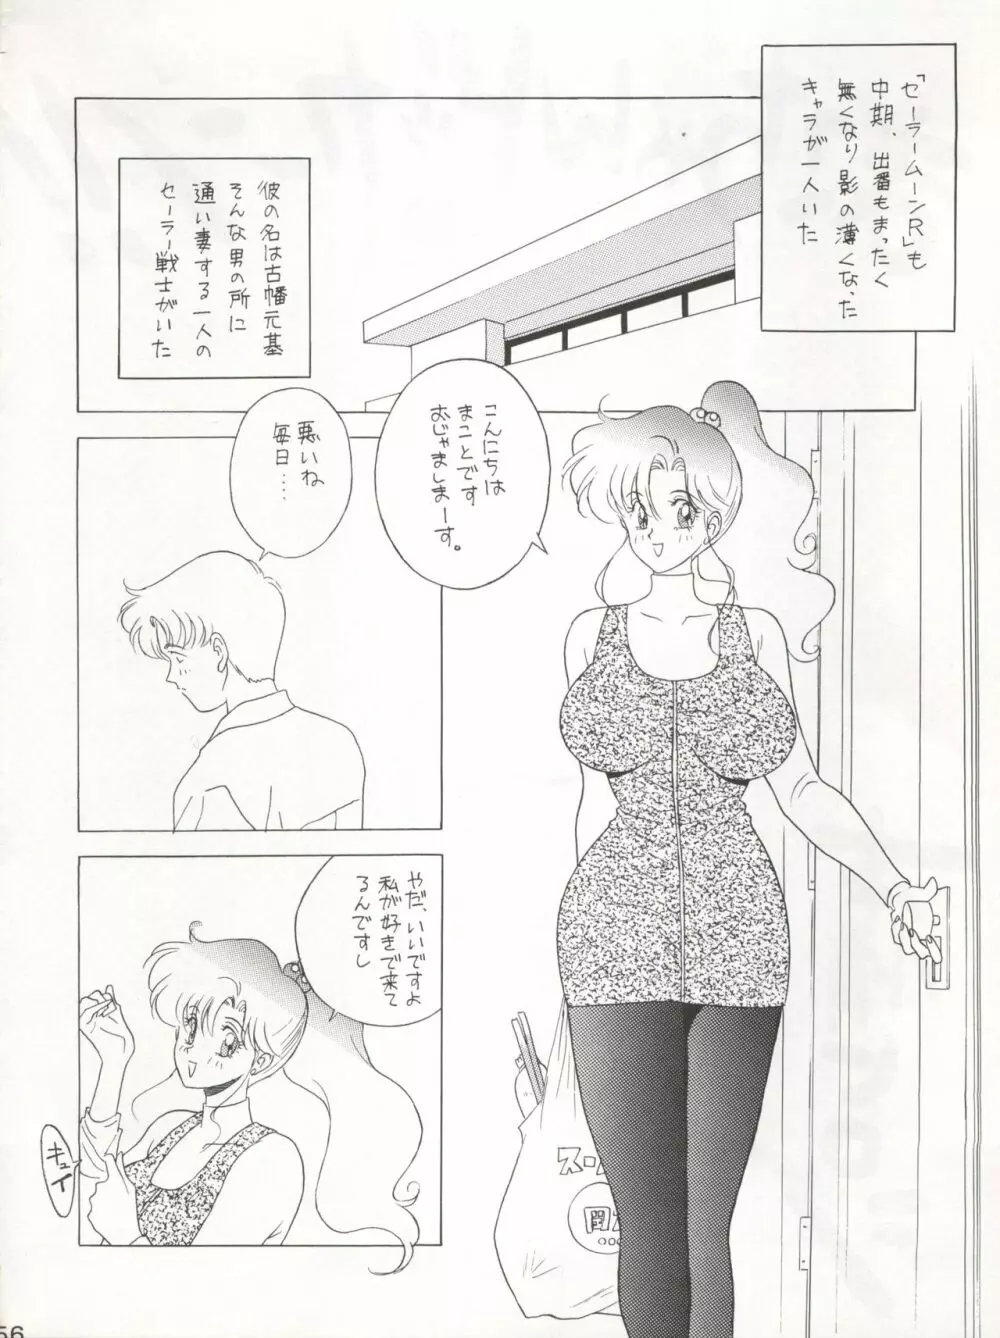 KATZE 7 上巻 - page57